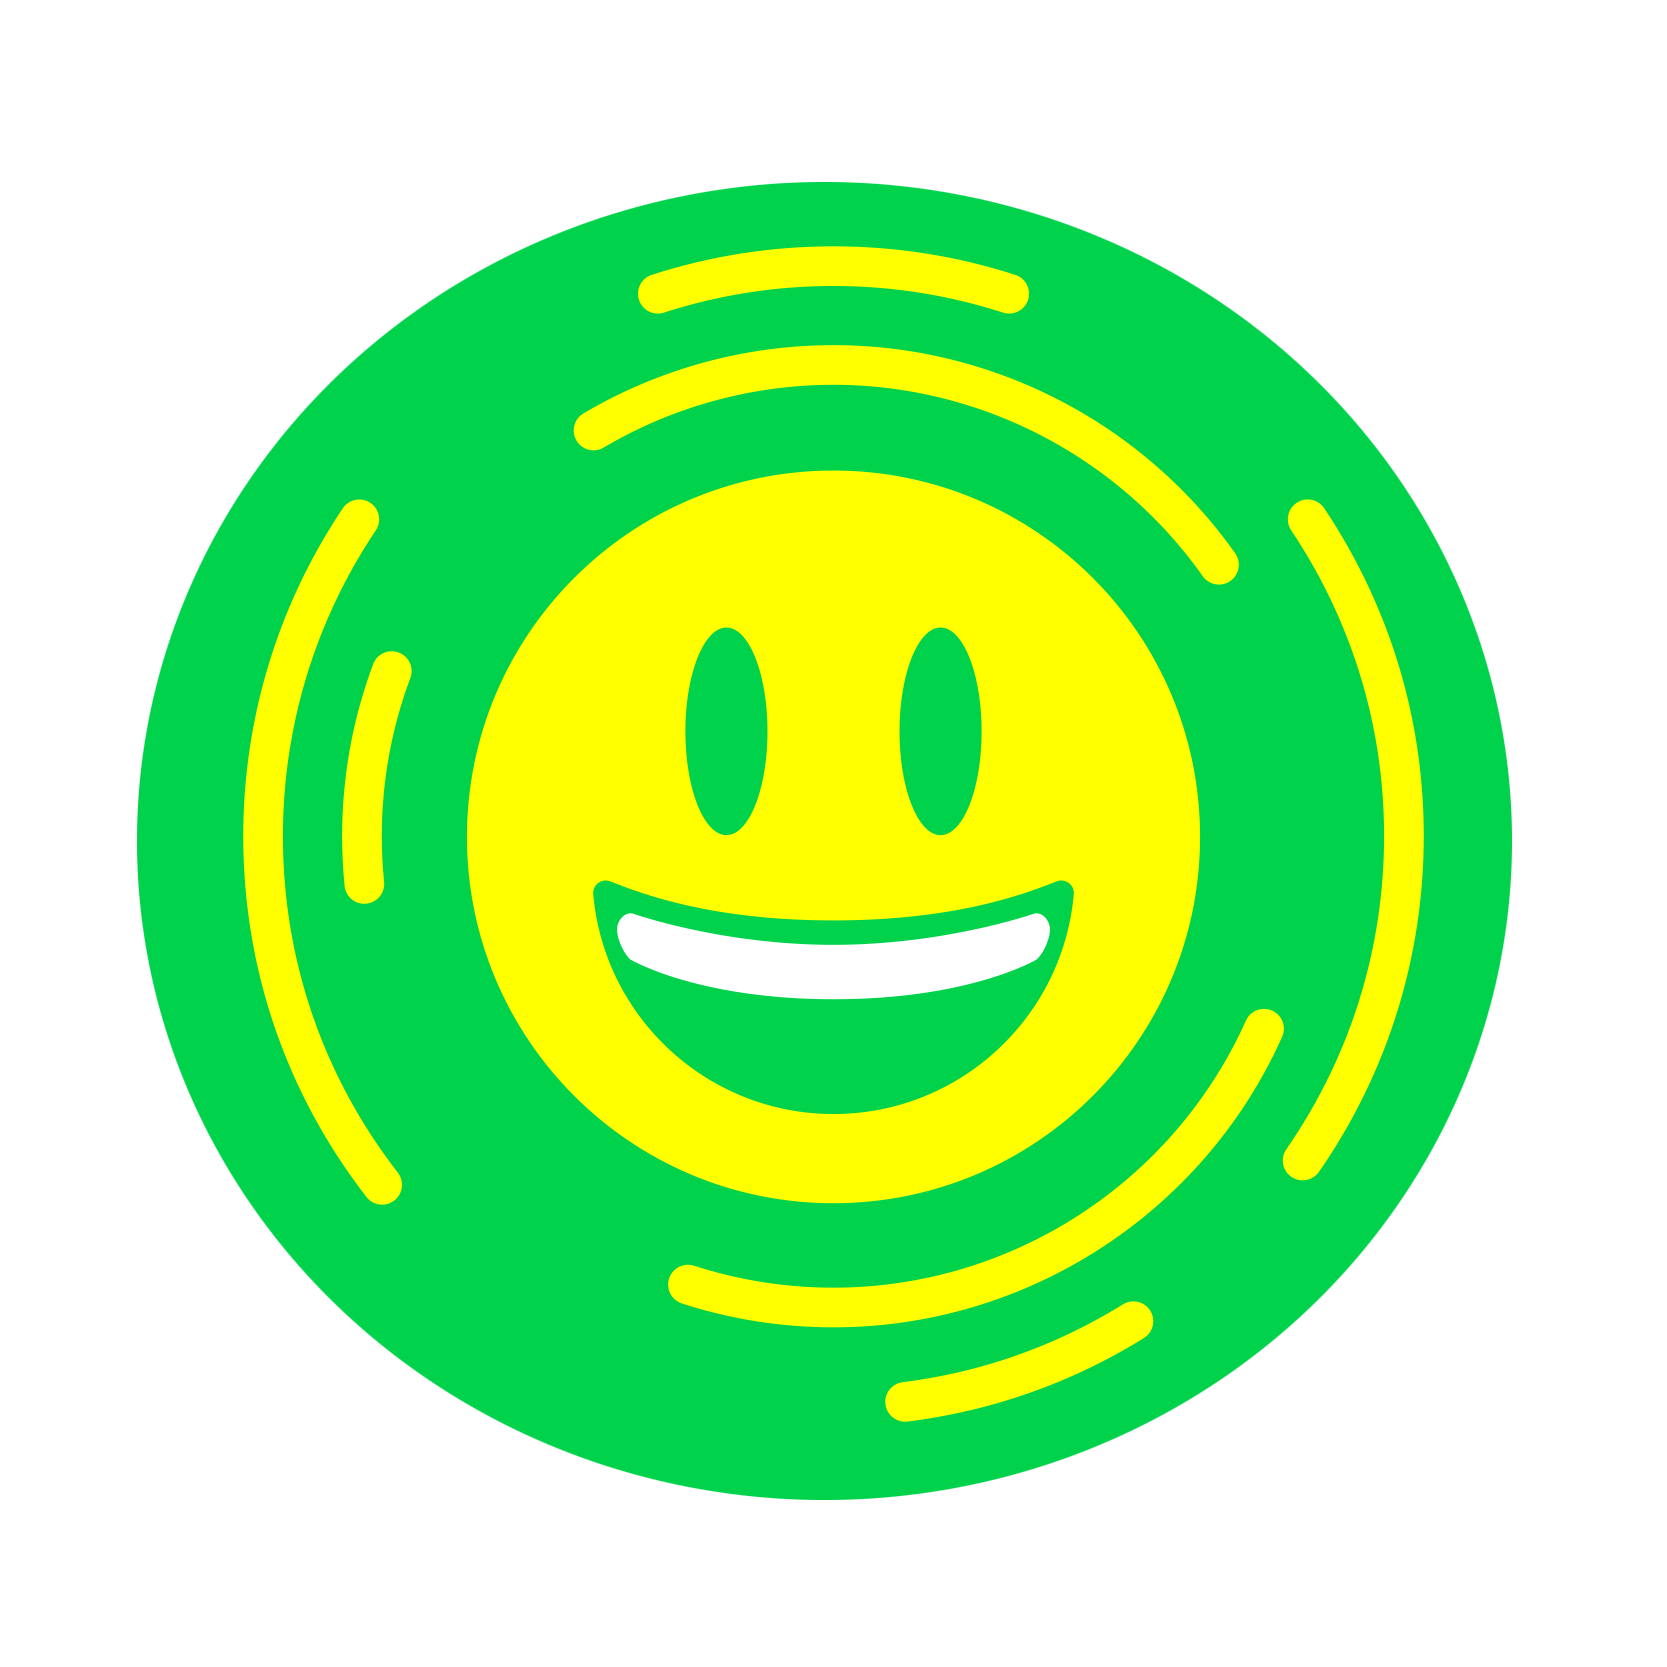 Emoji Logo - Emojitones Messenger - every emoji has a sound to send to friends